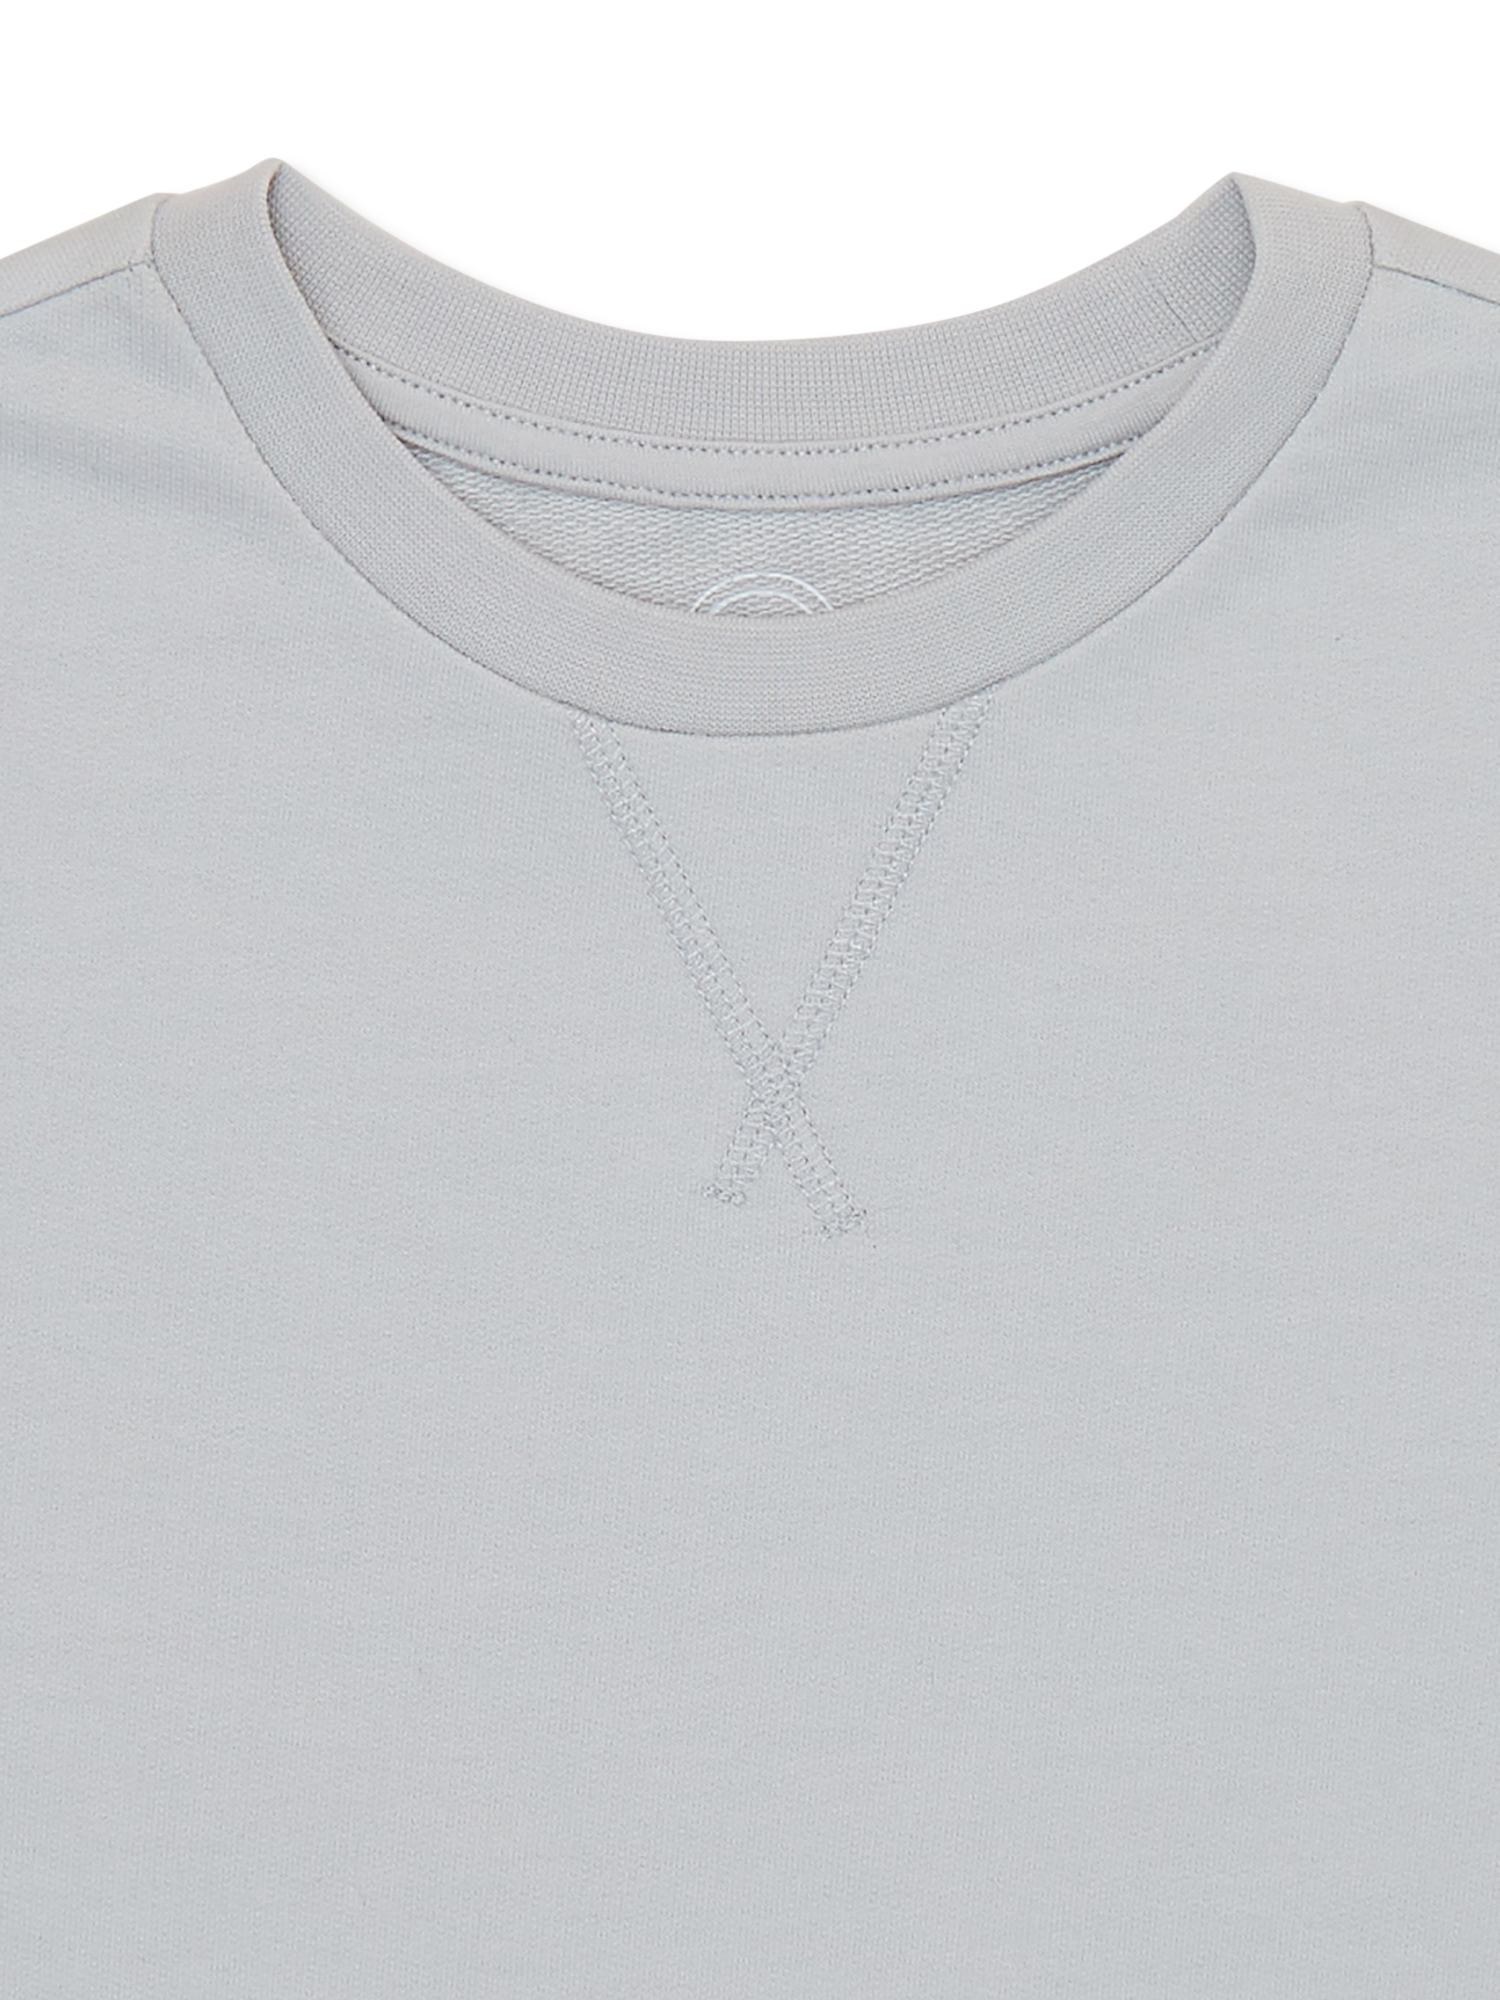 Wonder Nation Boys Short Sleeve Textured T-Shirt, Sizes 4-18 - image 2 of 3